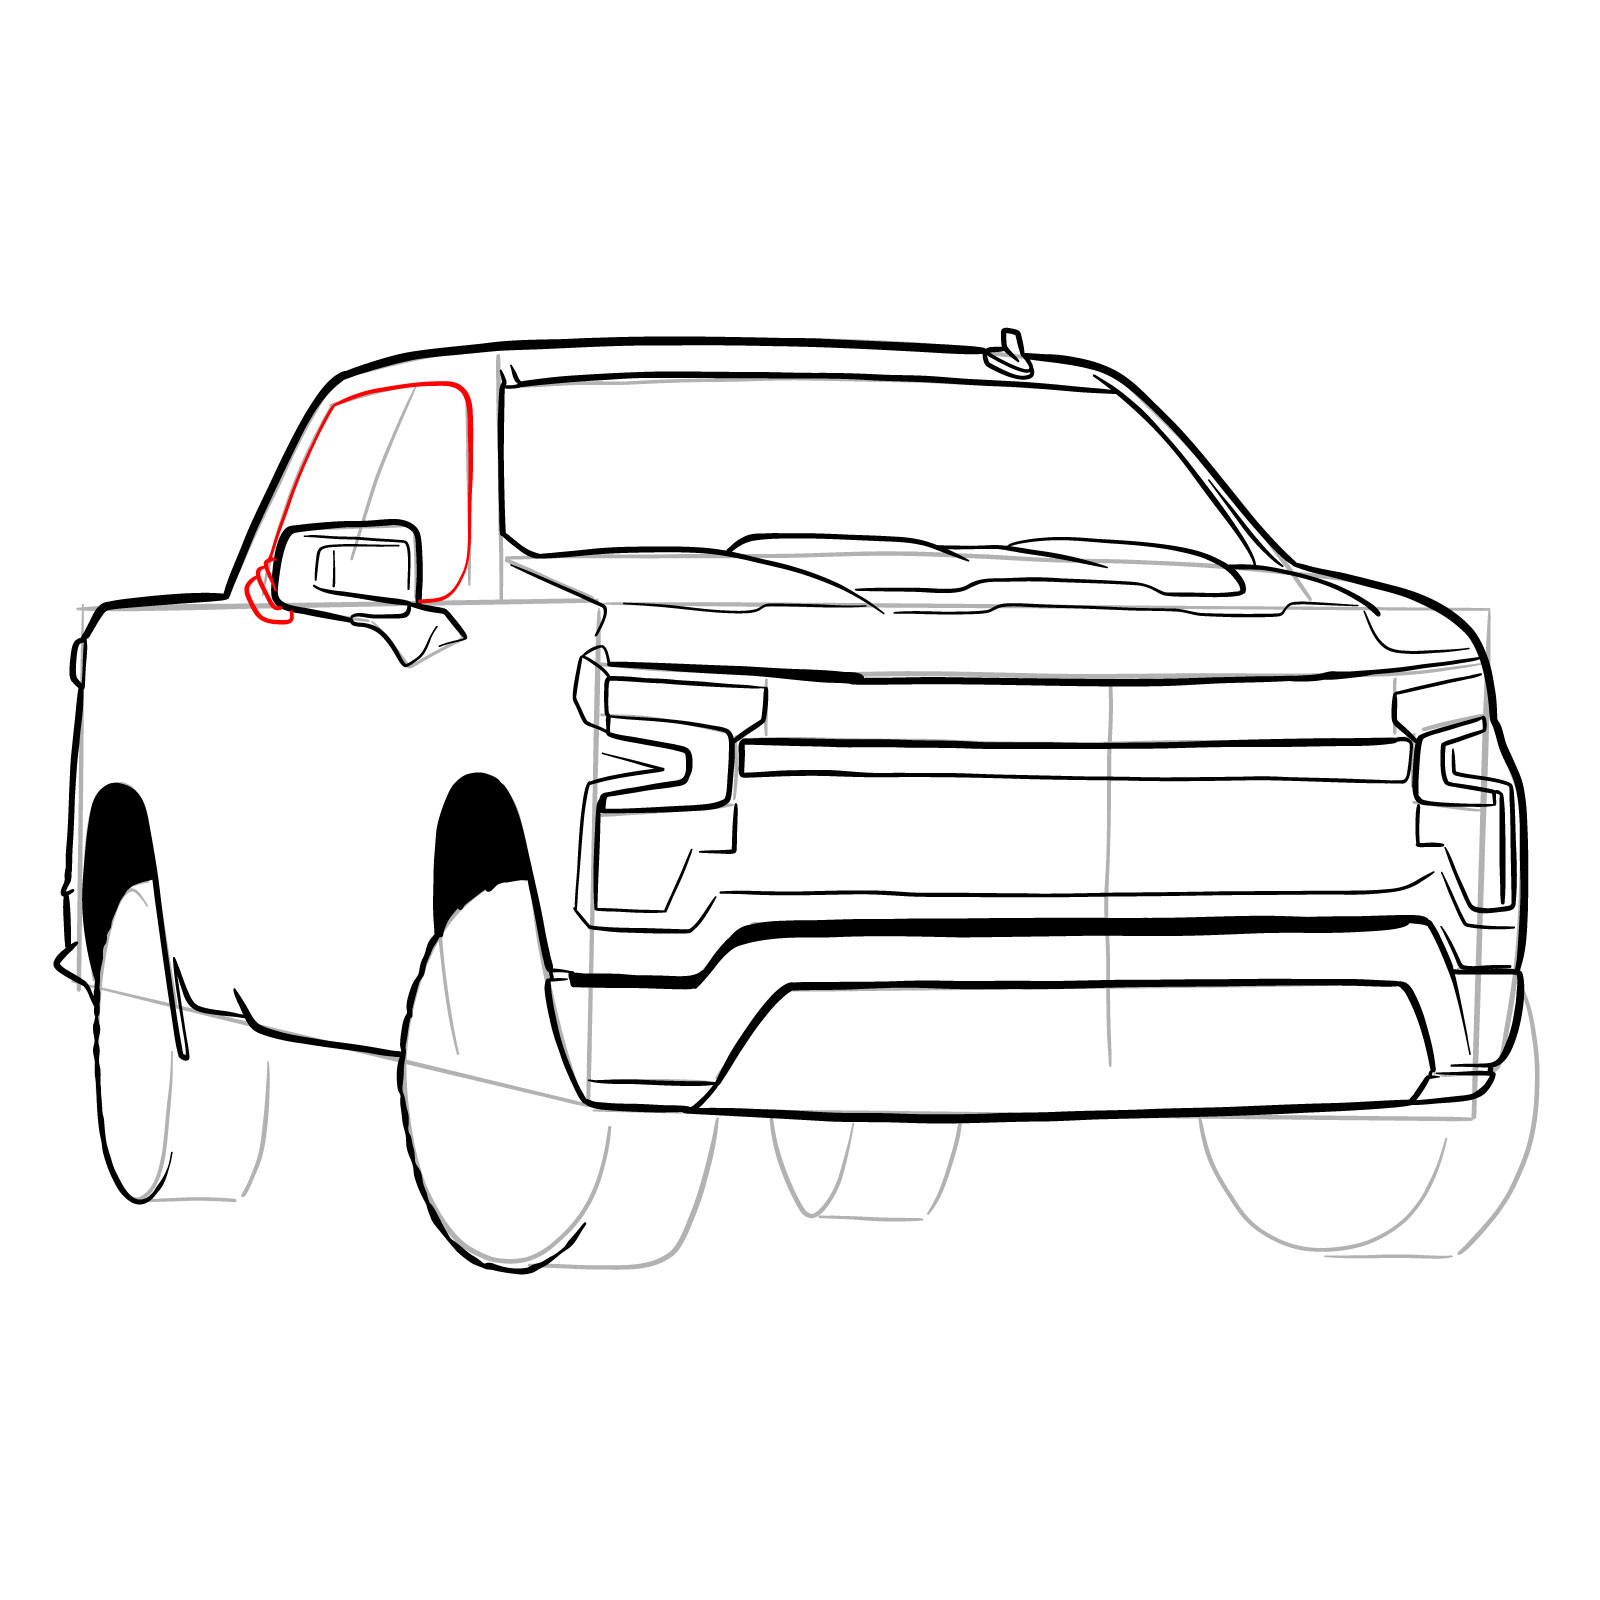 How to draw a 2022 Chevy Silverado - step 24